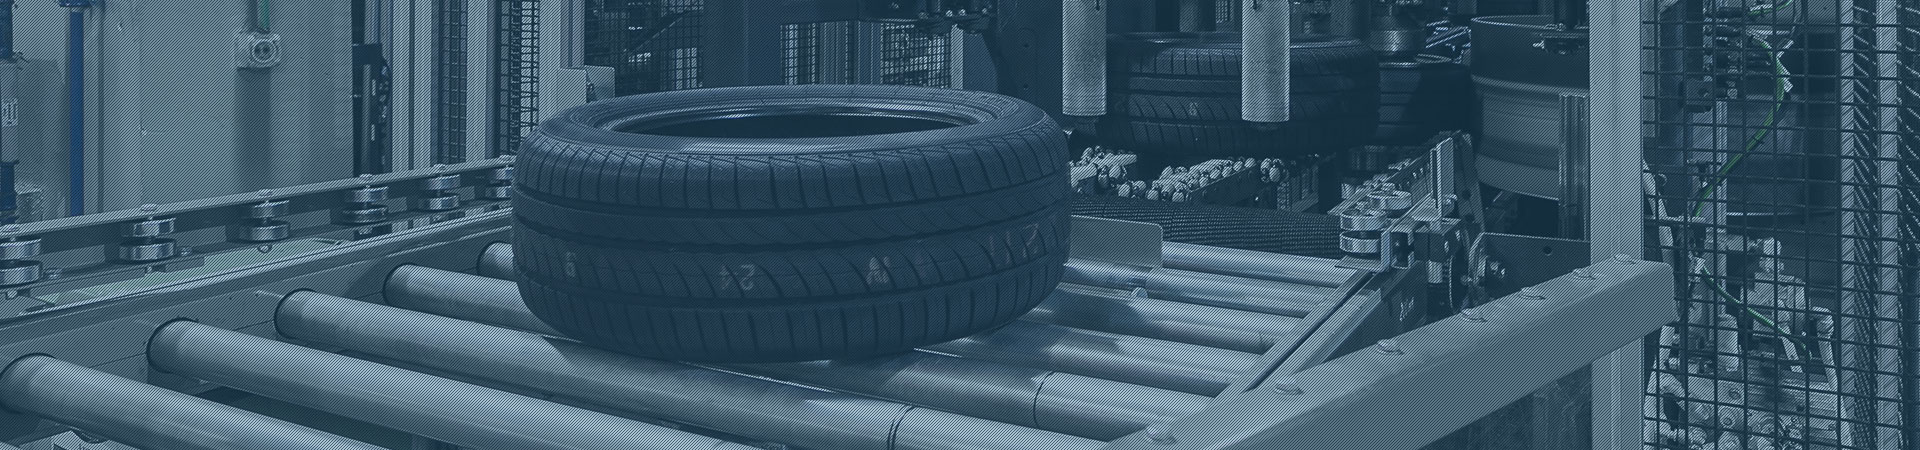 Reifenbeschriftung in der Reifen- und Gummiindustrie - groß